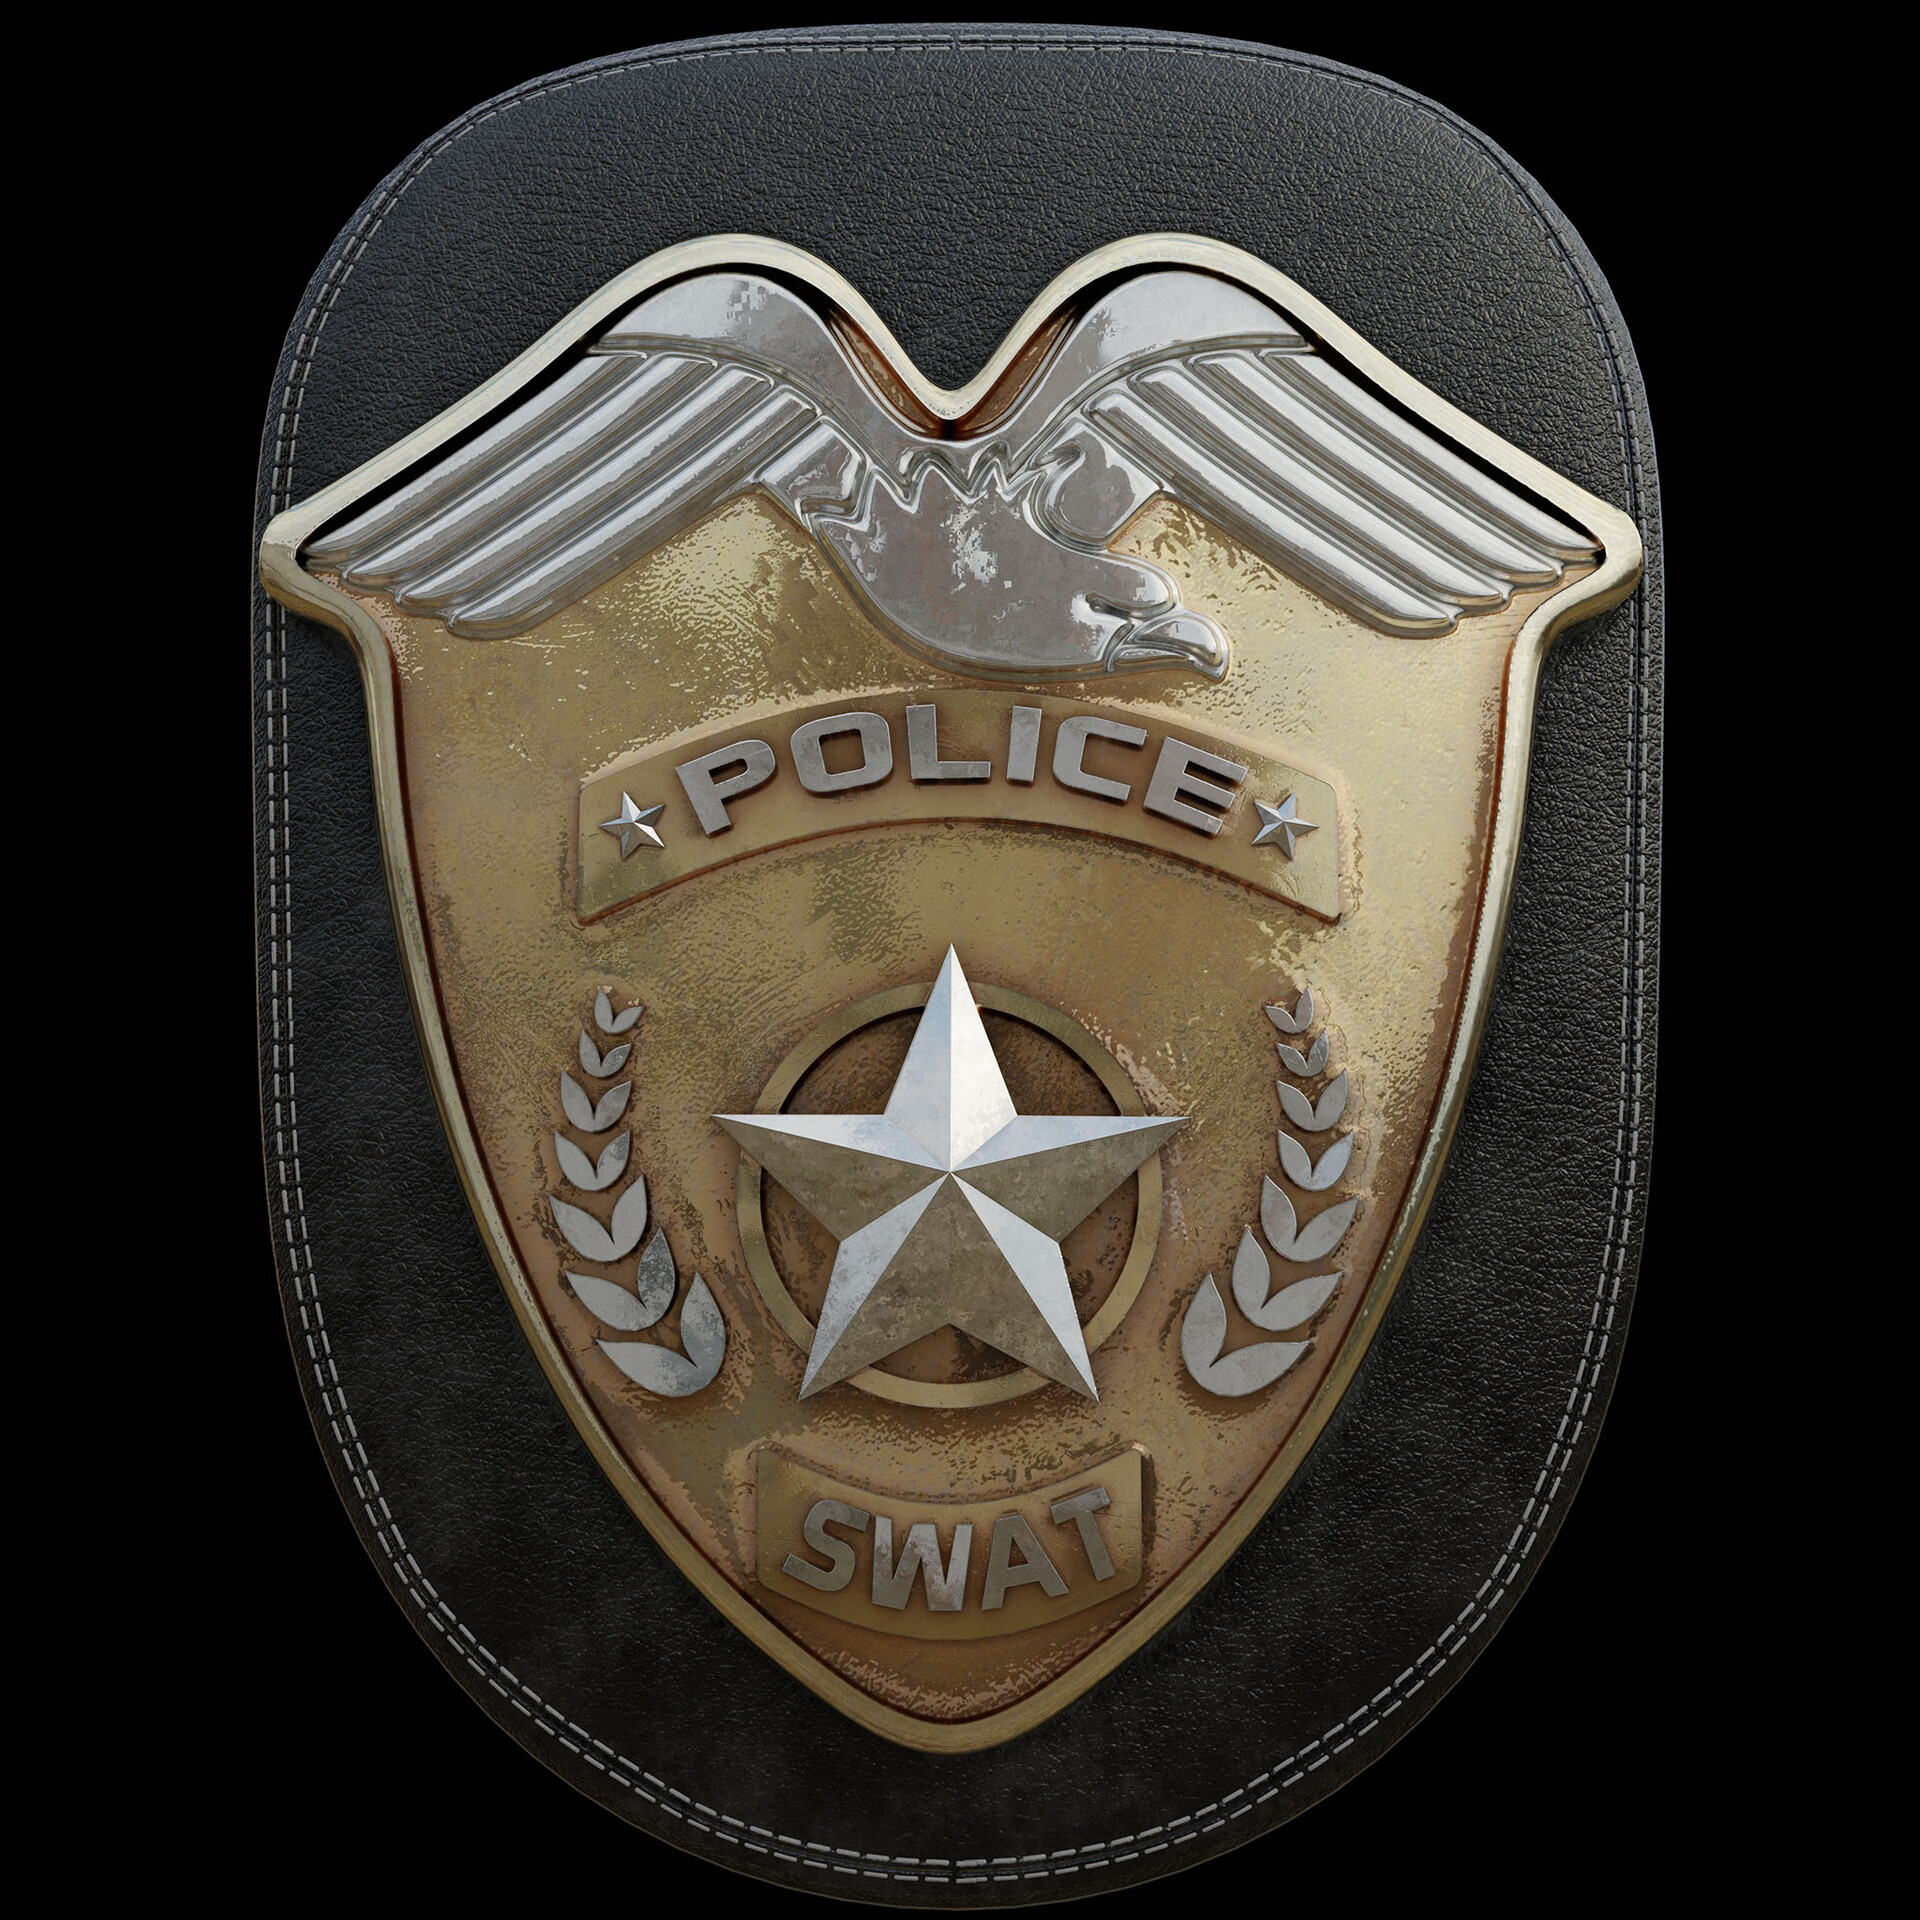 generic police shield